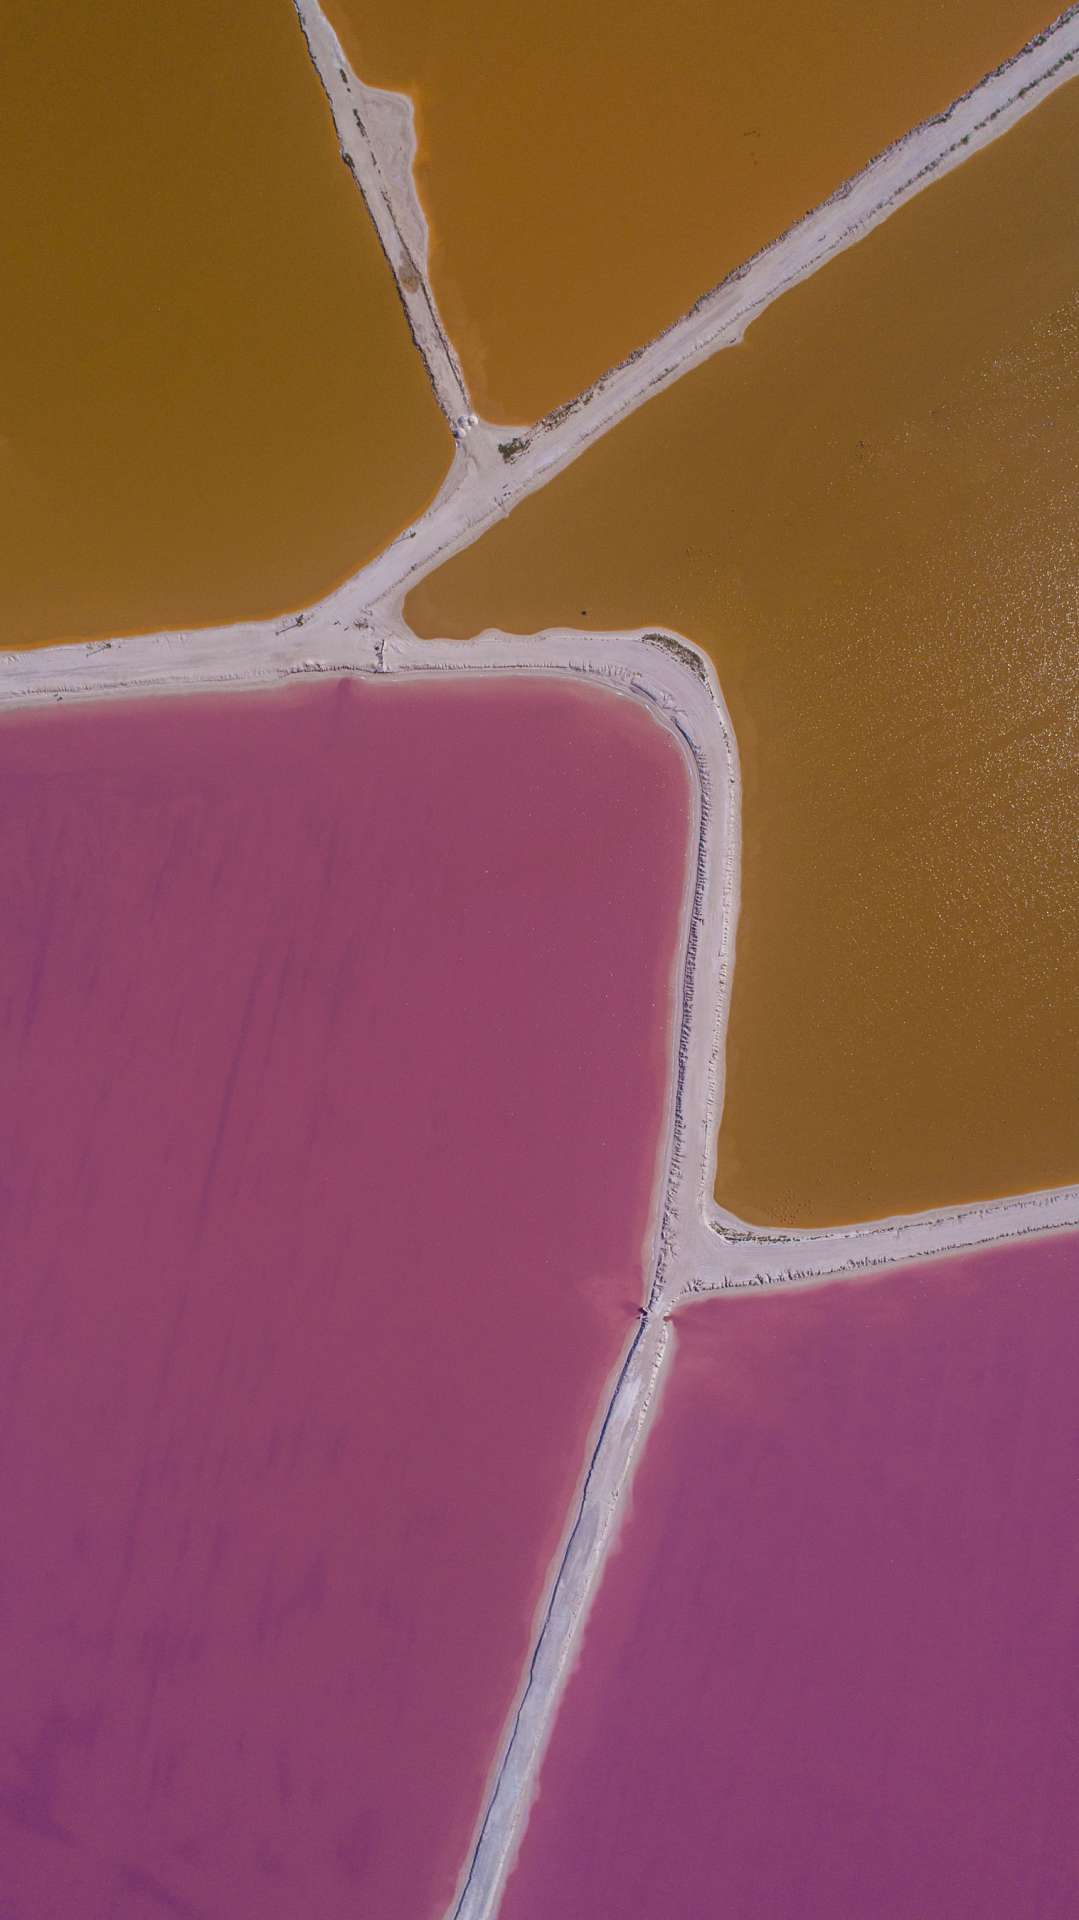 Pink lagoons Las Coloradas Yucatan Mexico Aerial View by drone Enrico Pescantini 3